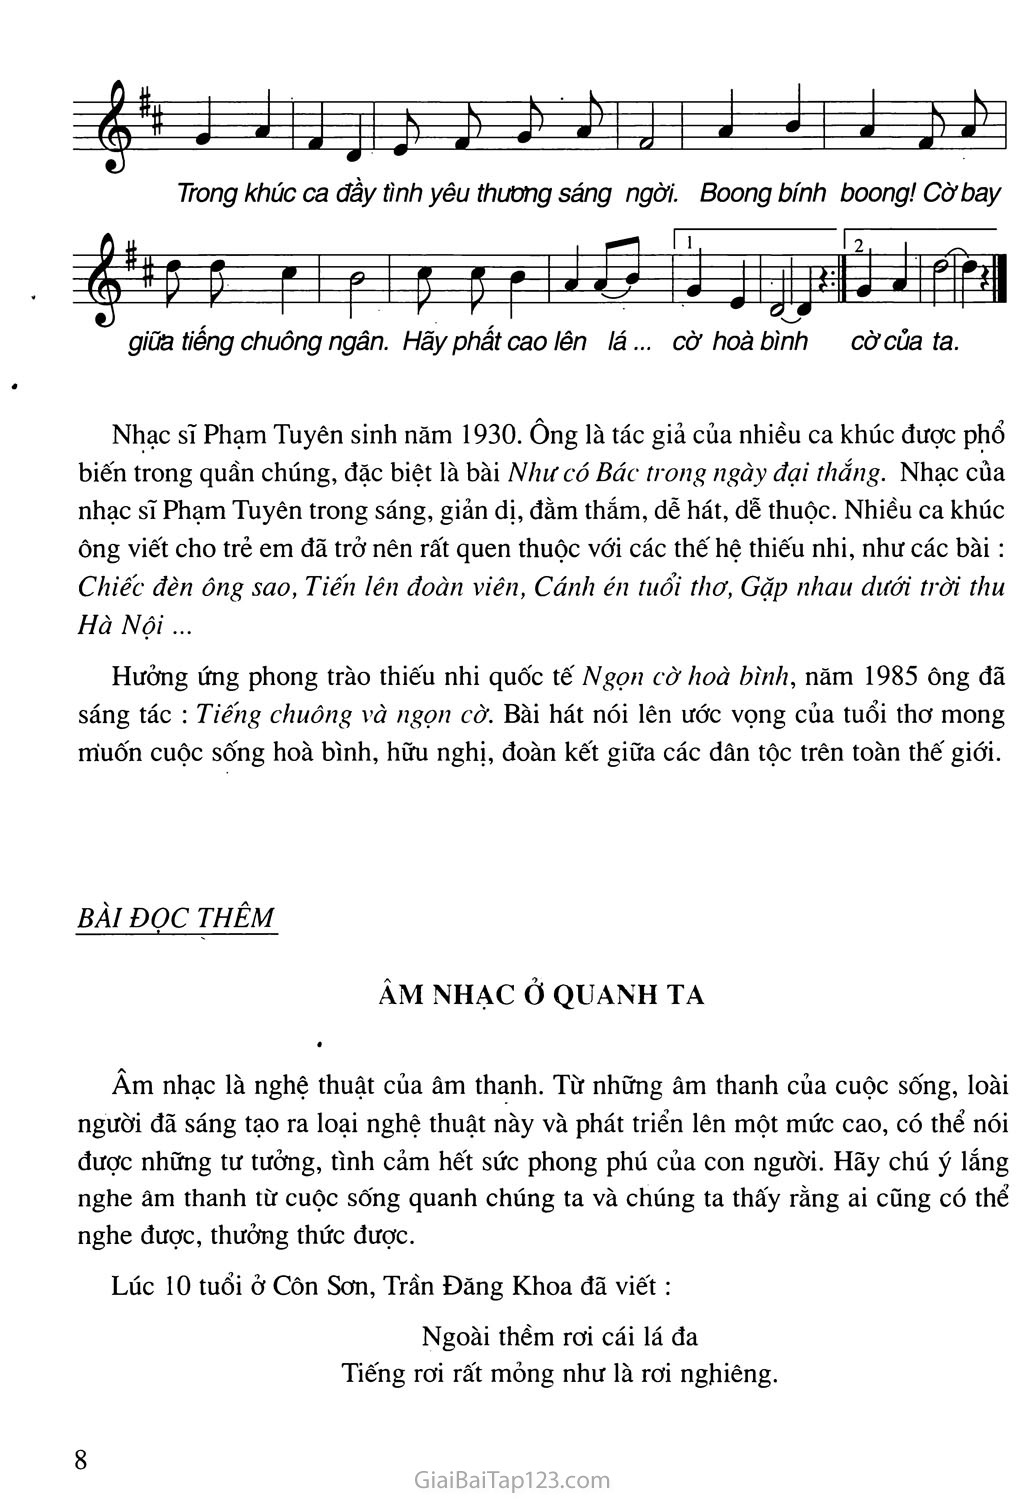 Tiết 2. Học hát: Bài Tiếng chuông và ngọn cờ trang 2